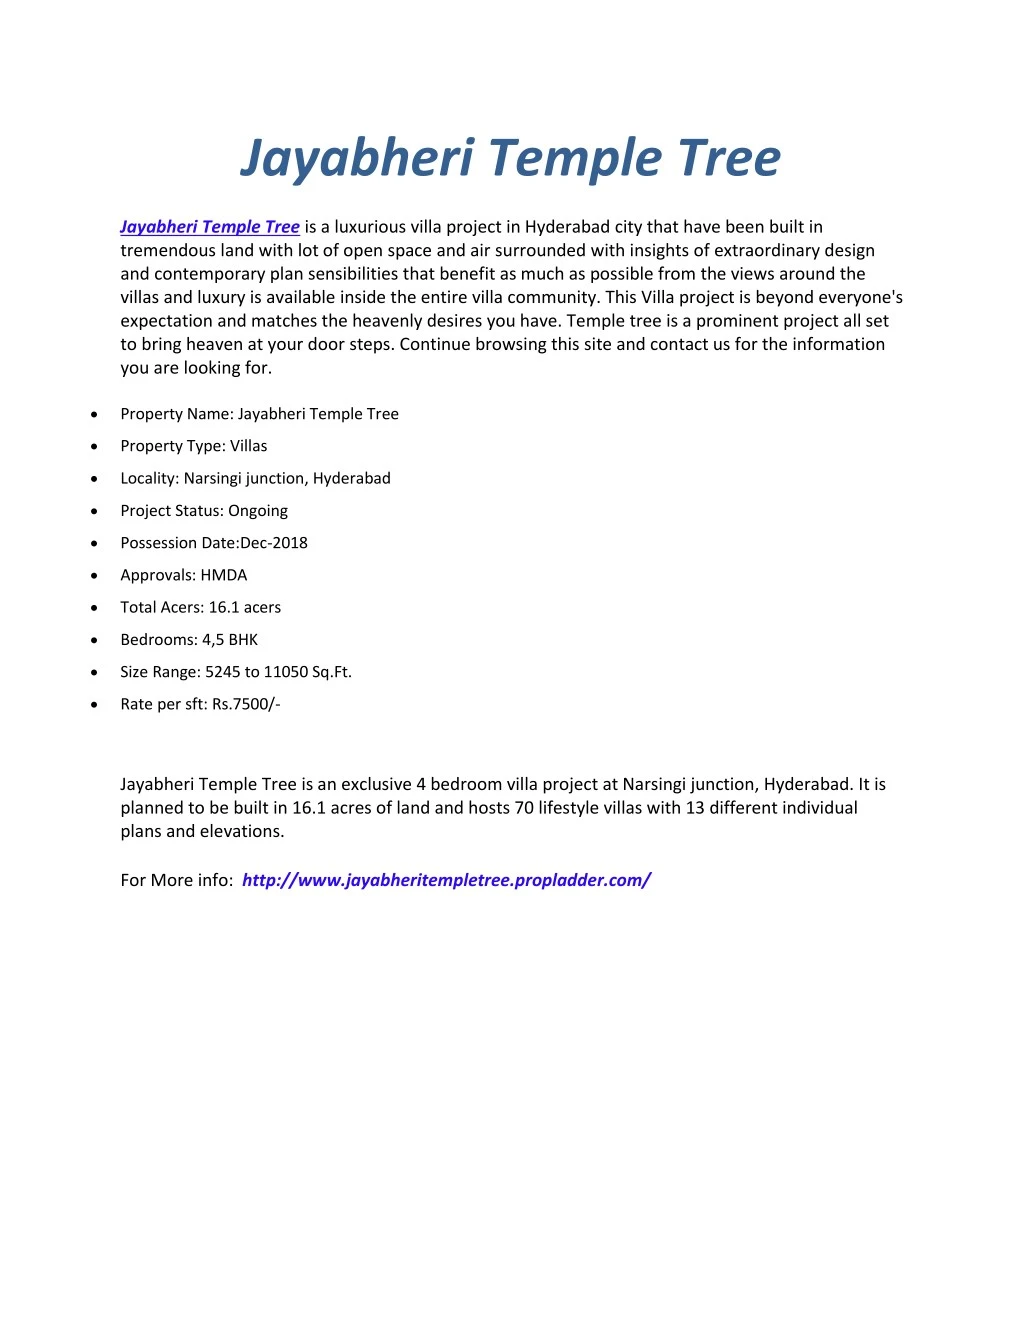 jayabheri temple tree